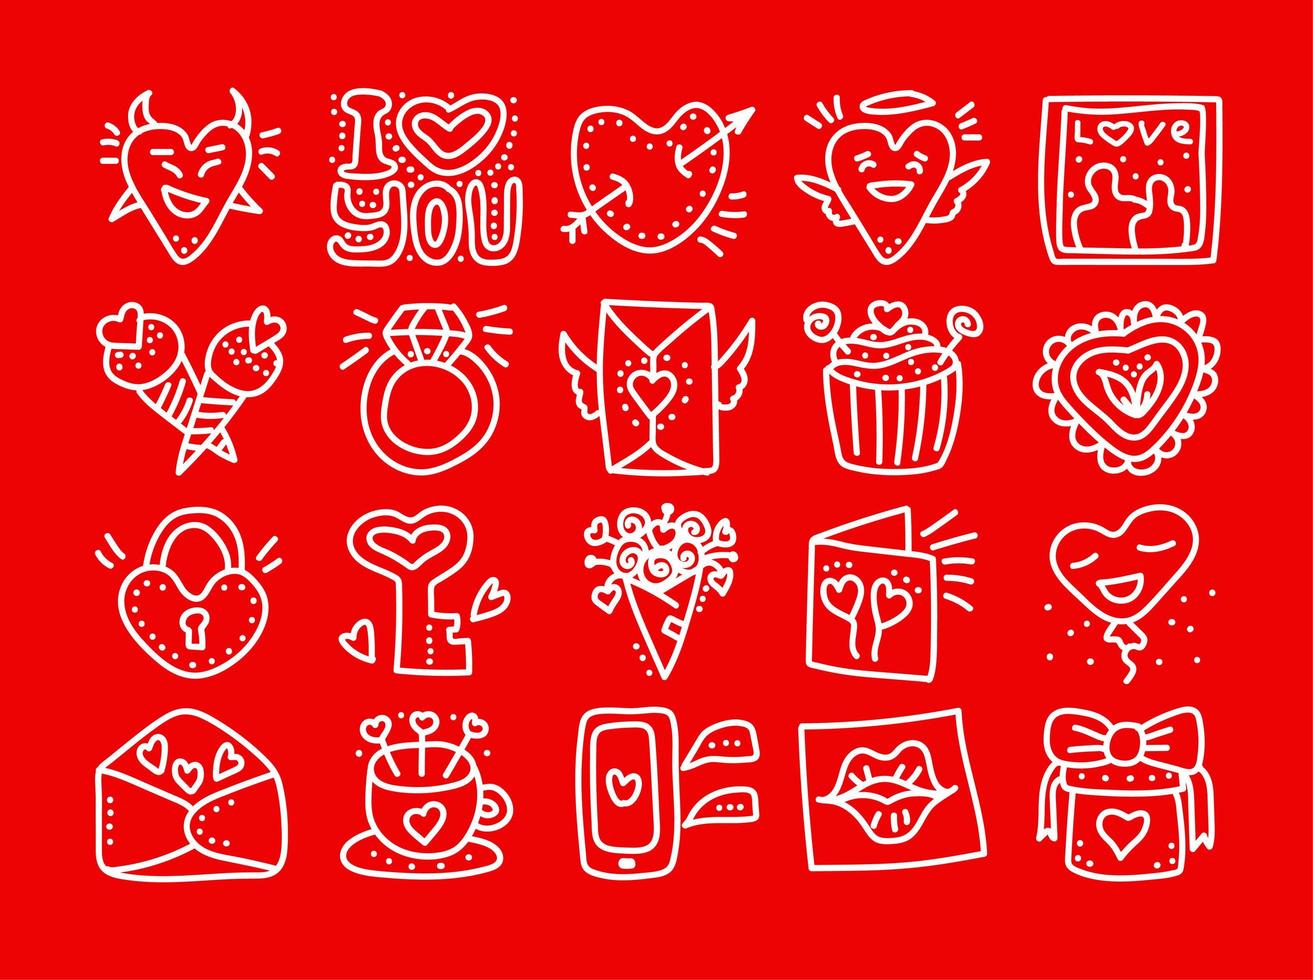 ensemble d'icônes vectorielles dessinées à la main de la Saint-Valentin. coeurs d'amour saint valentin, mug, fleurs, cupcakes, boissons, lettres, ballons, serrure, icônes de messages vecteur